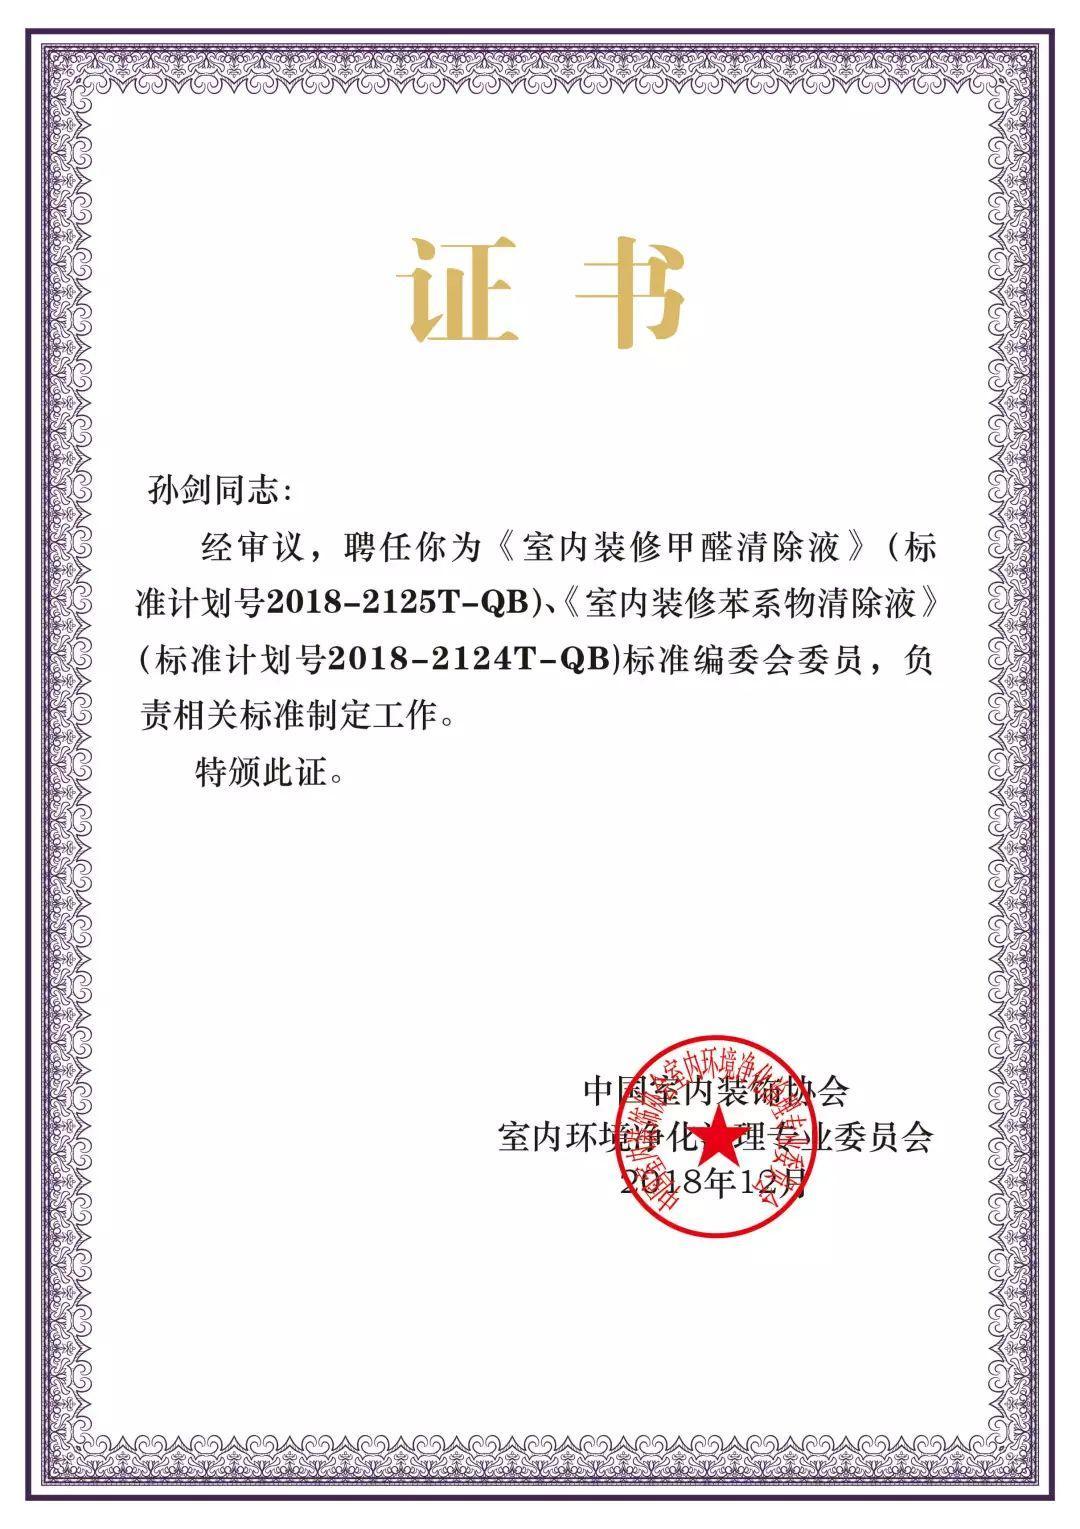 喜報！創綠家被認定為2020年度杭州市專利試點企業